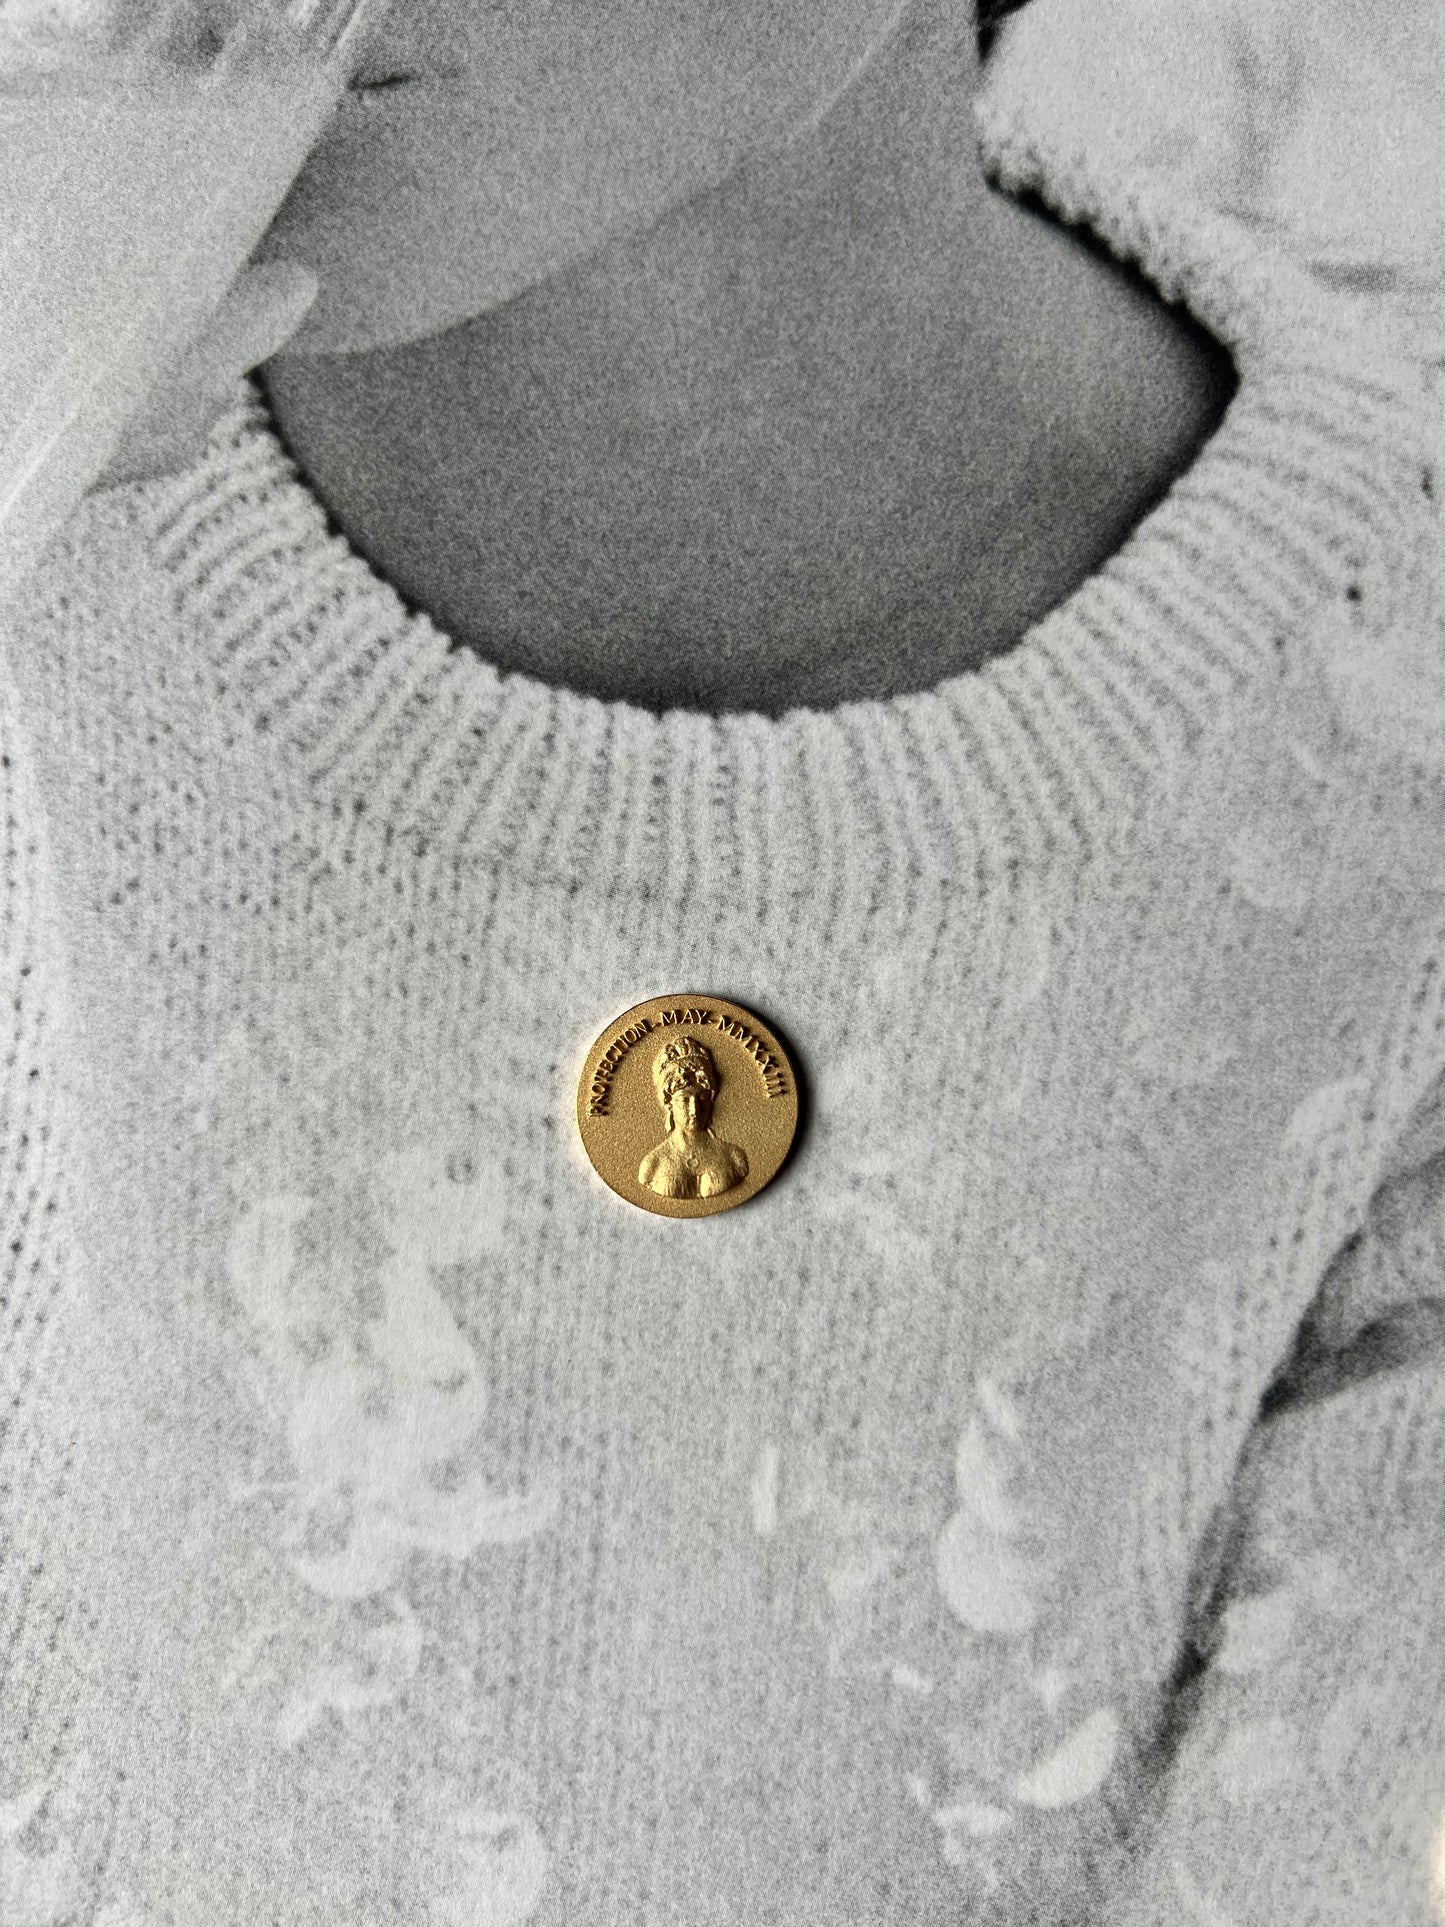 Medea antique coin gold